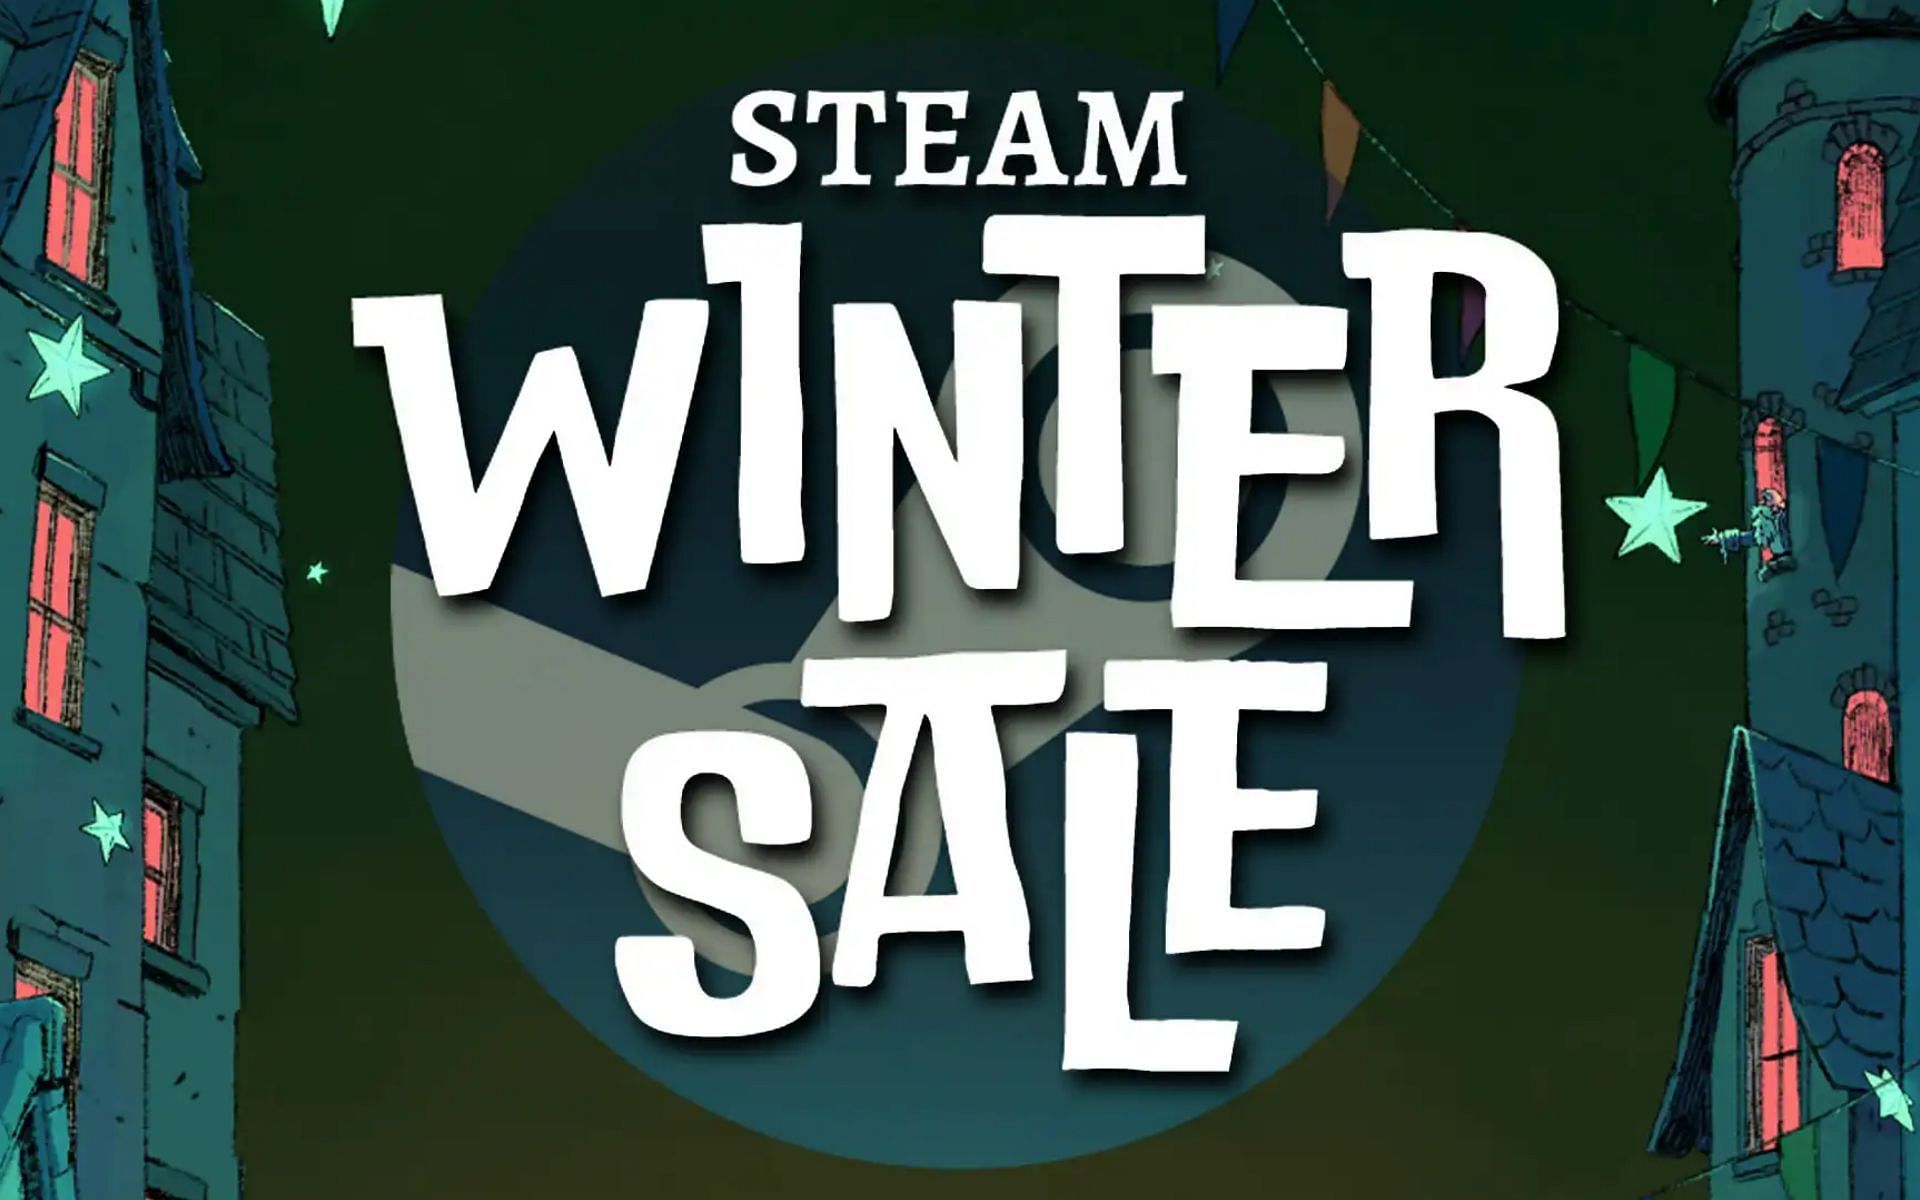 The Steam Winter Sale is underway. (Image via Valve)